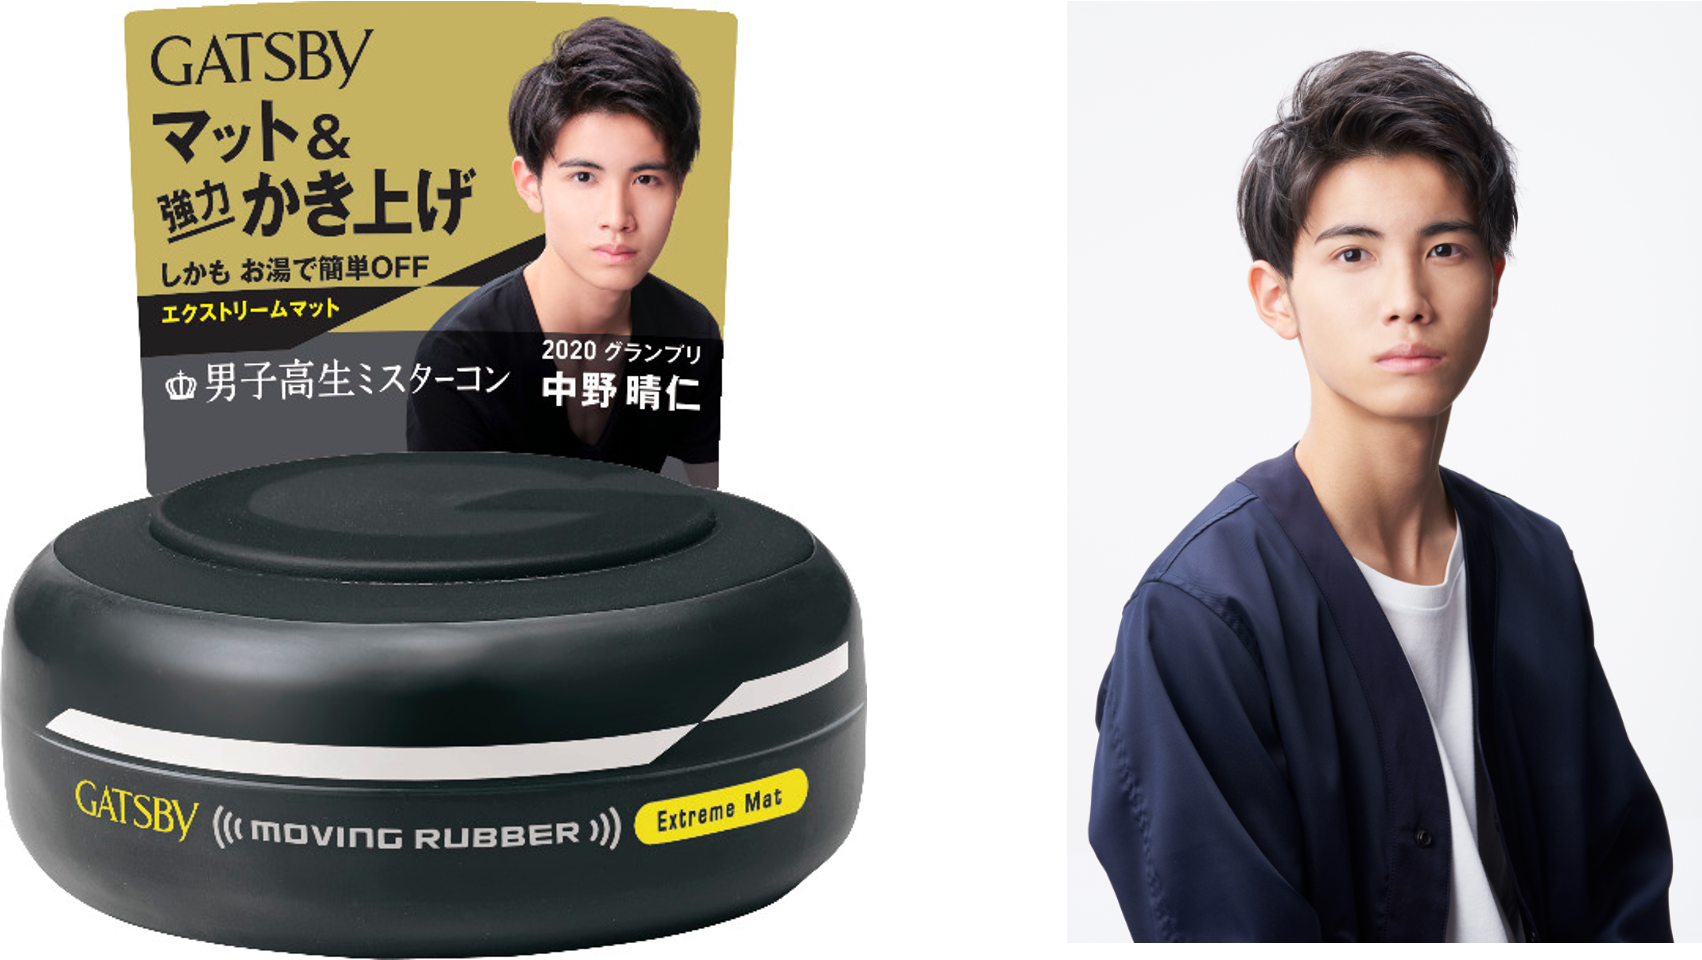 日本一のイケメン男子高生がギャツビー ムービングラバー限定ラベルに起用 株式会社エイチジェイのプレスリリース